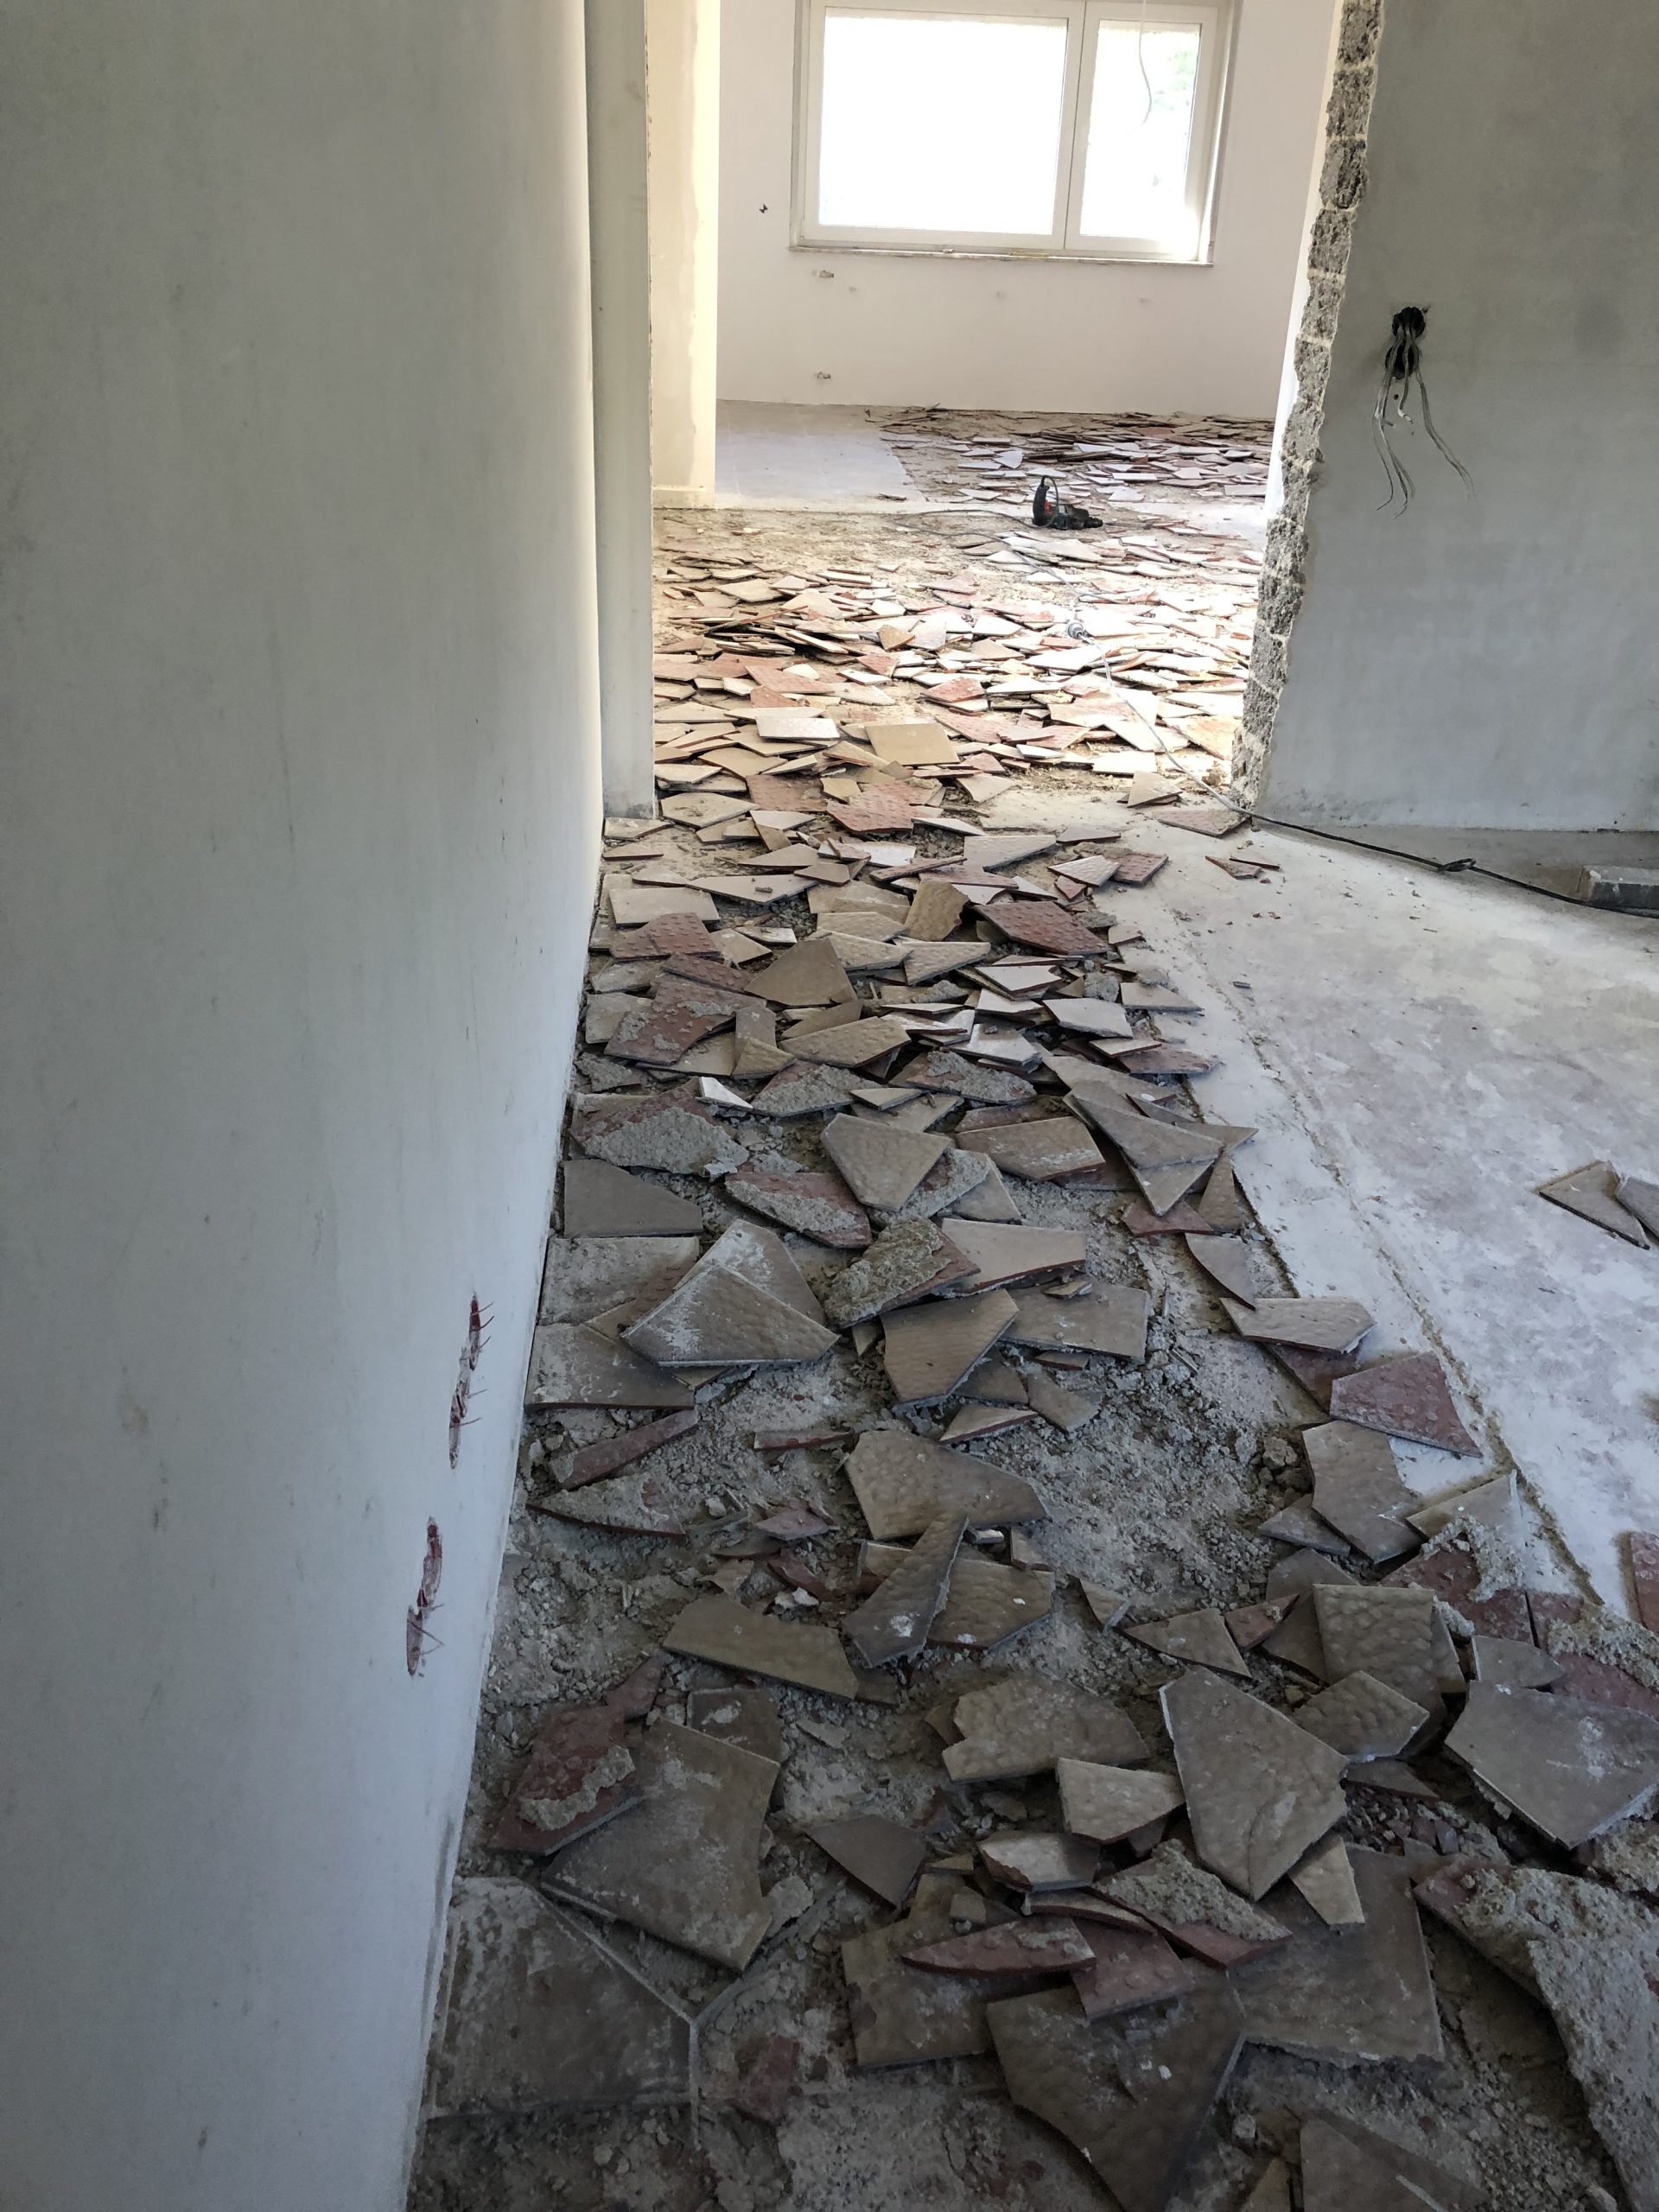 Haussanierung – Verwandlung im Wohnzimmer mit Wandfarbe von Kalk Litir – Der Vorher/Nachher Vergleich Inneneinrichtung renovieren umbauen sanieren Sanierung Renovierung 2021